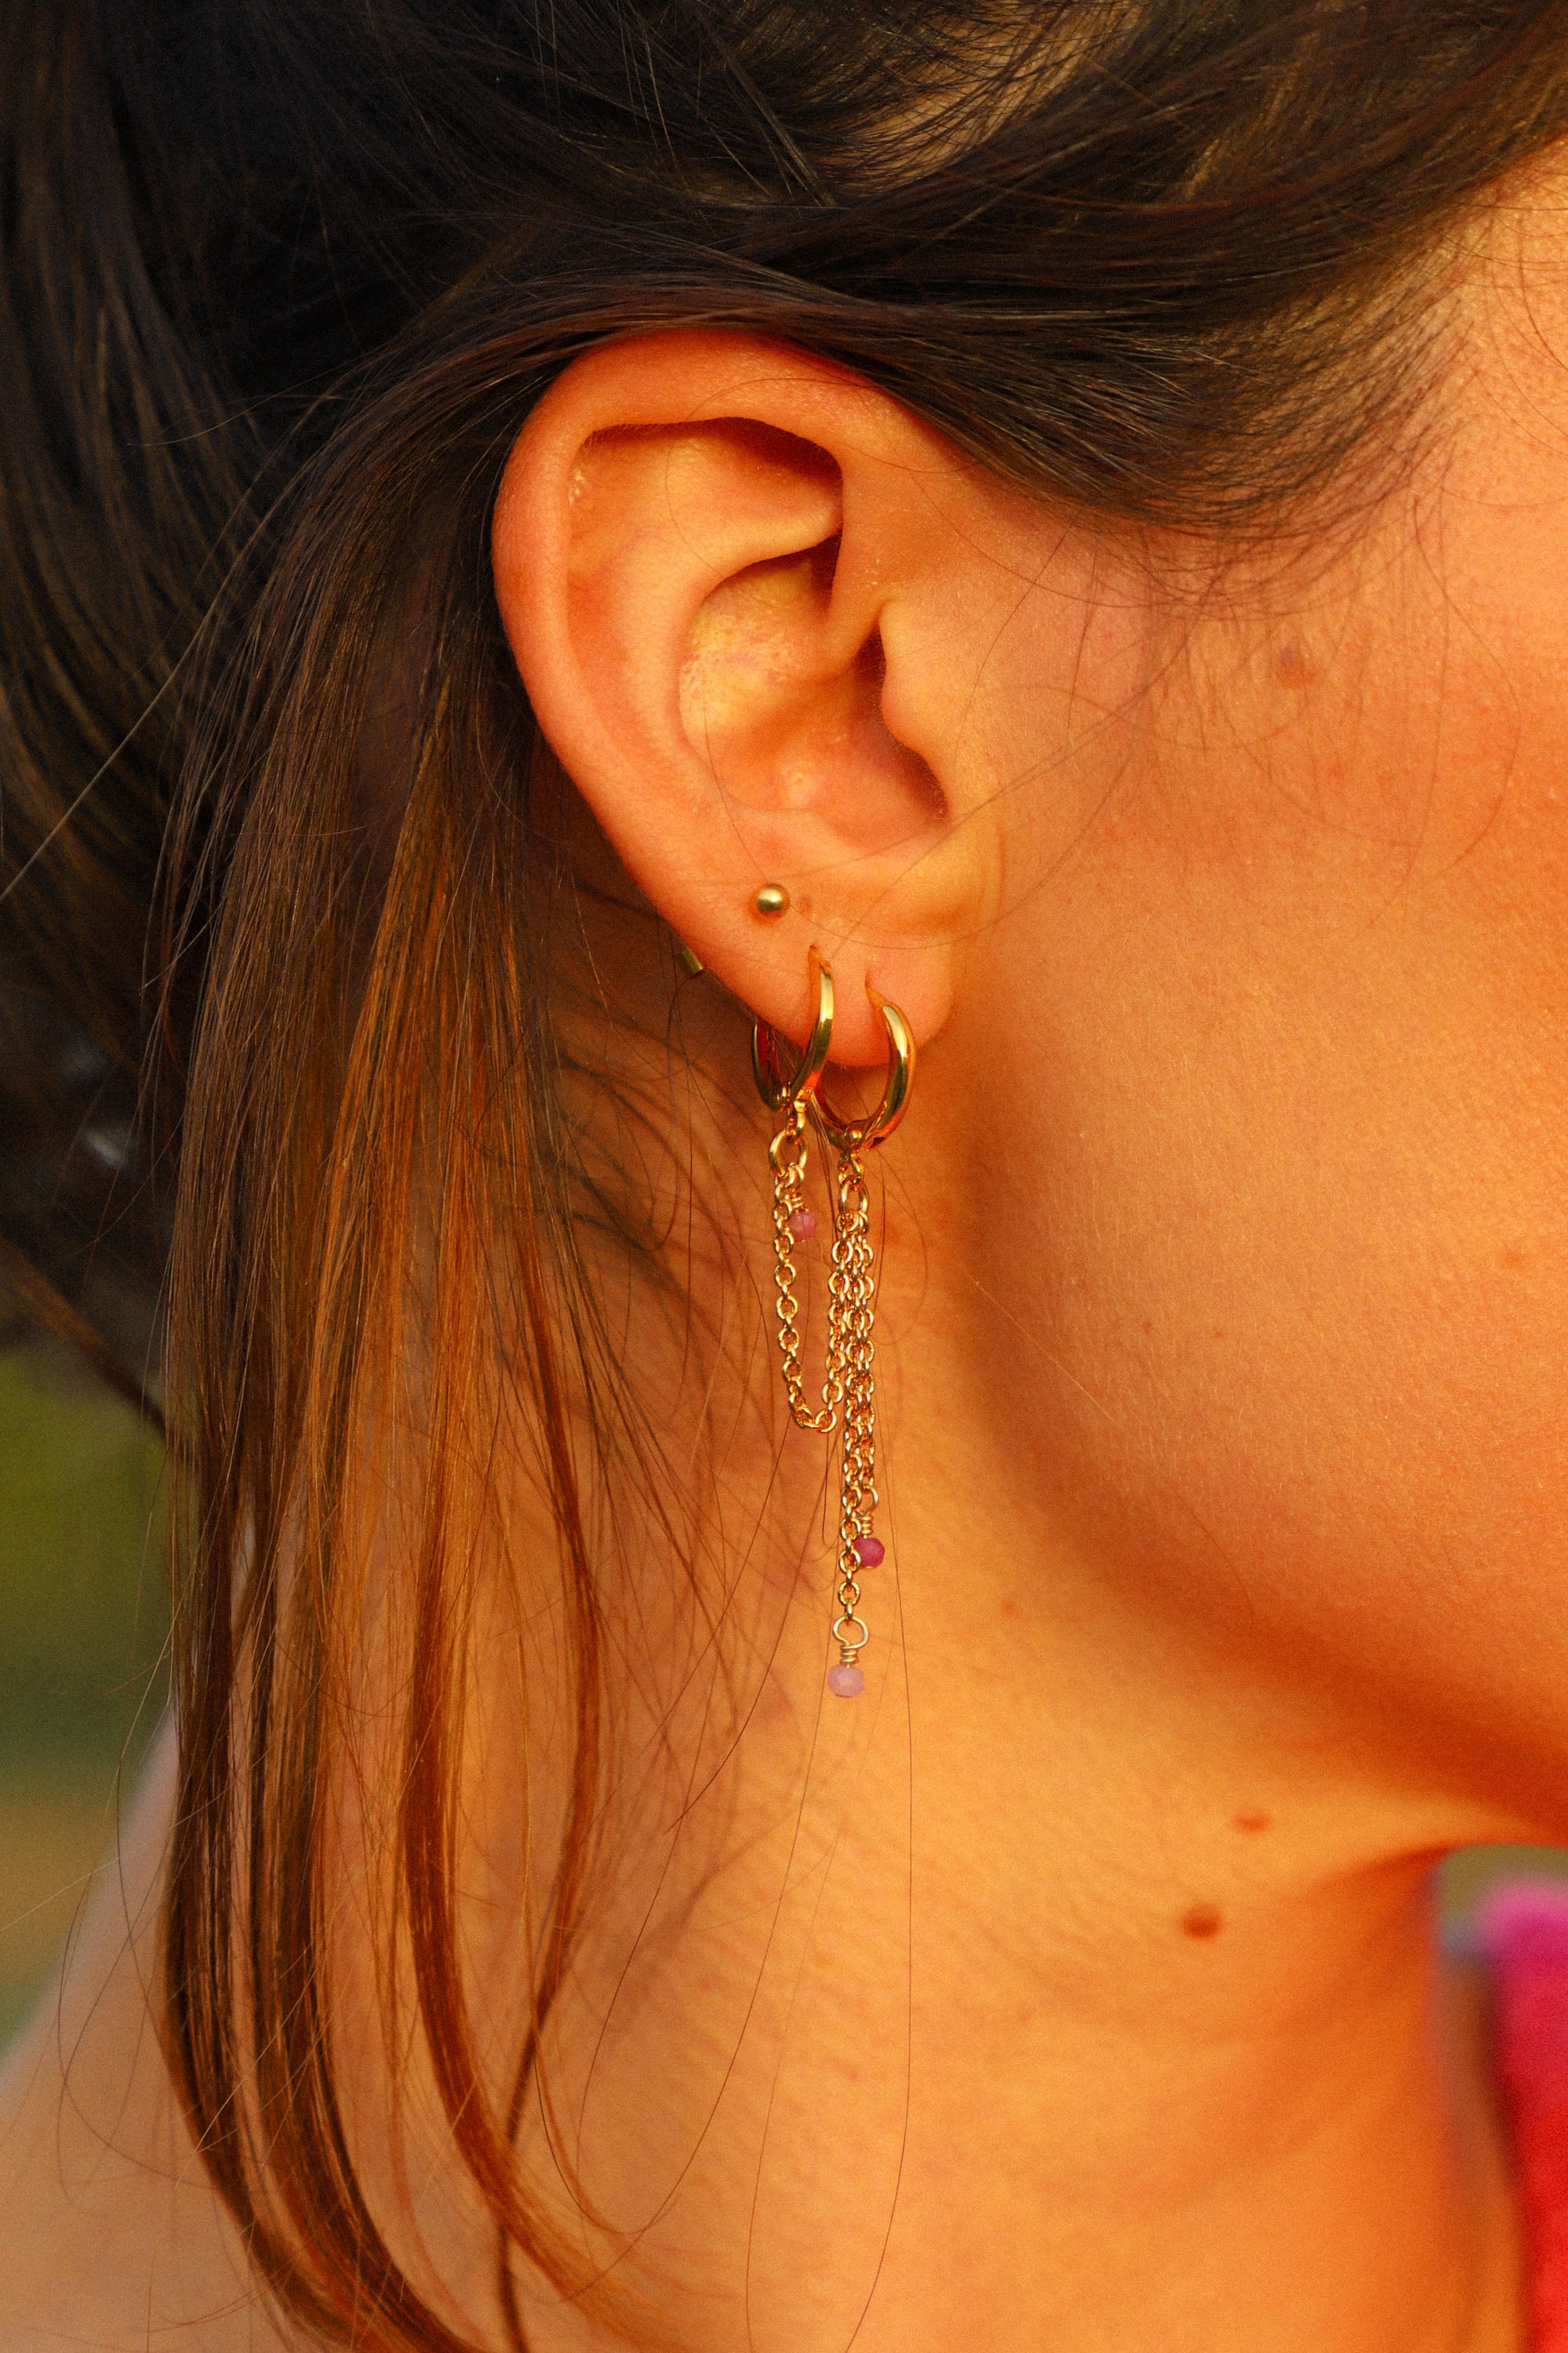 Double boucle d'oreille Nora. Une chaîne reliée et deux pendantes avec de petites perles roses.